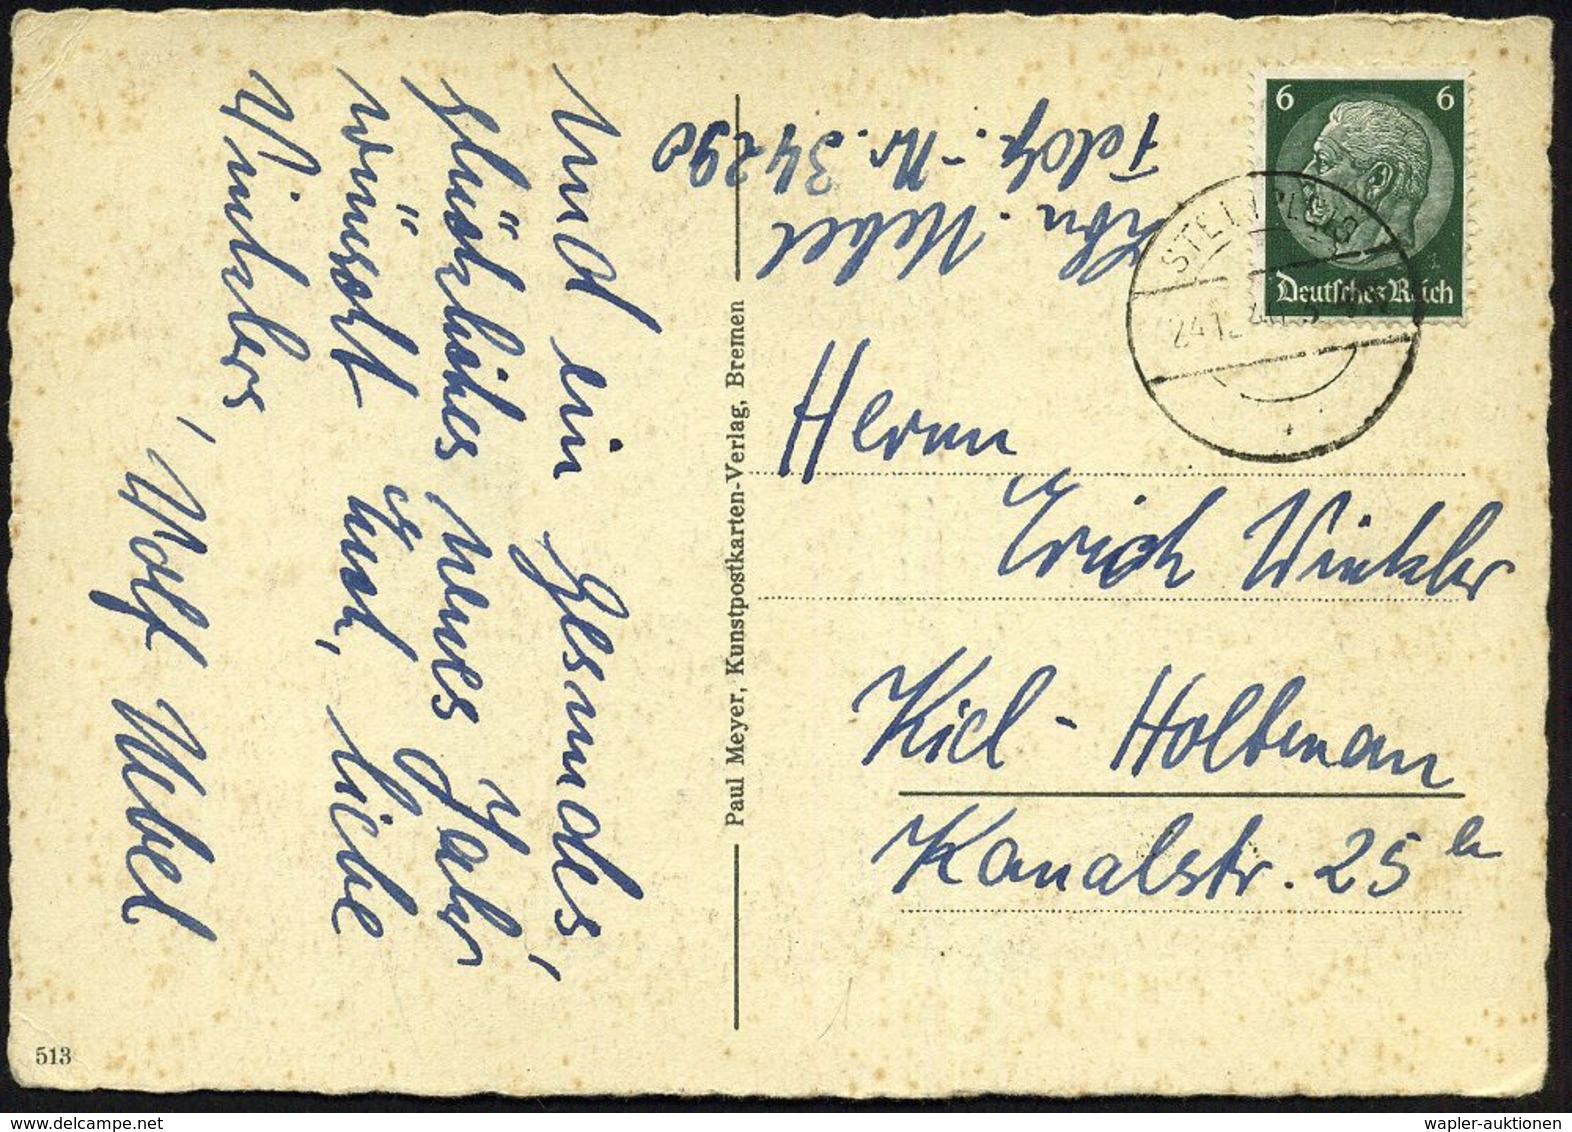 DT.BES.NIEDERLANDE 1940 (24.12.) 6 Pf. Hindenburg + Hs. Abs.: Feldp. Nr. 34 220 = S S , Abwehrstelle Den Haag! = Geheimd - 2. Weltkrieg